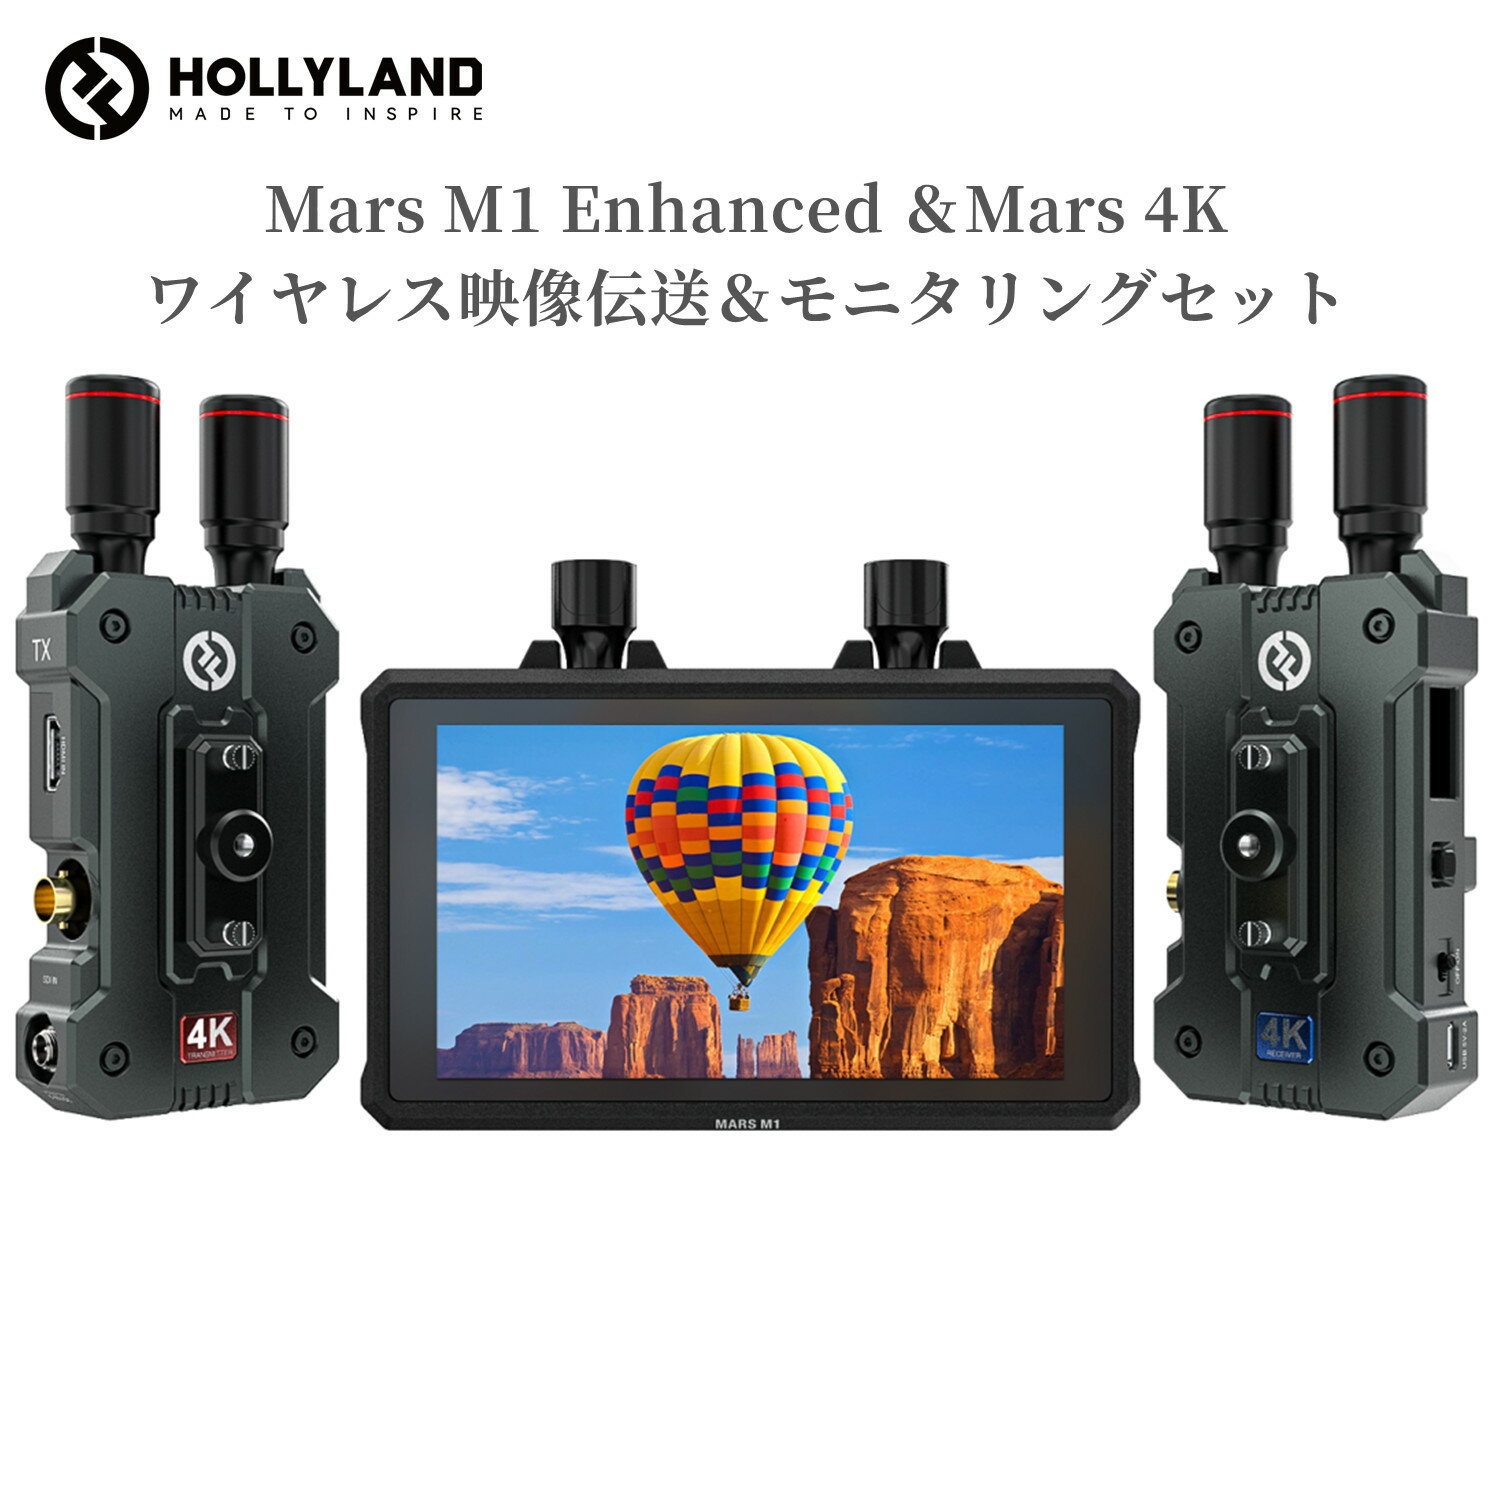 【特典付き】Hollyland ワイヤレス映像伝送＆モニタリングセット Mars M1 Enhanced カメラ用モニターとMars 4Kワイヤレス映像伝送装置セット 無線映像伝送システムとモニターが一体化 HDMI/SDI入出力 遠隔地から高品質な映像・音声を伝送 効率よく映像を監視して伝送する